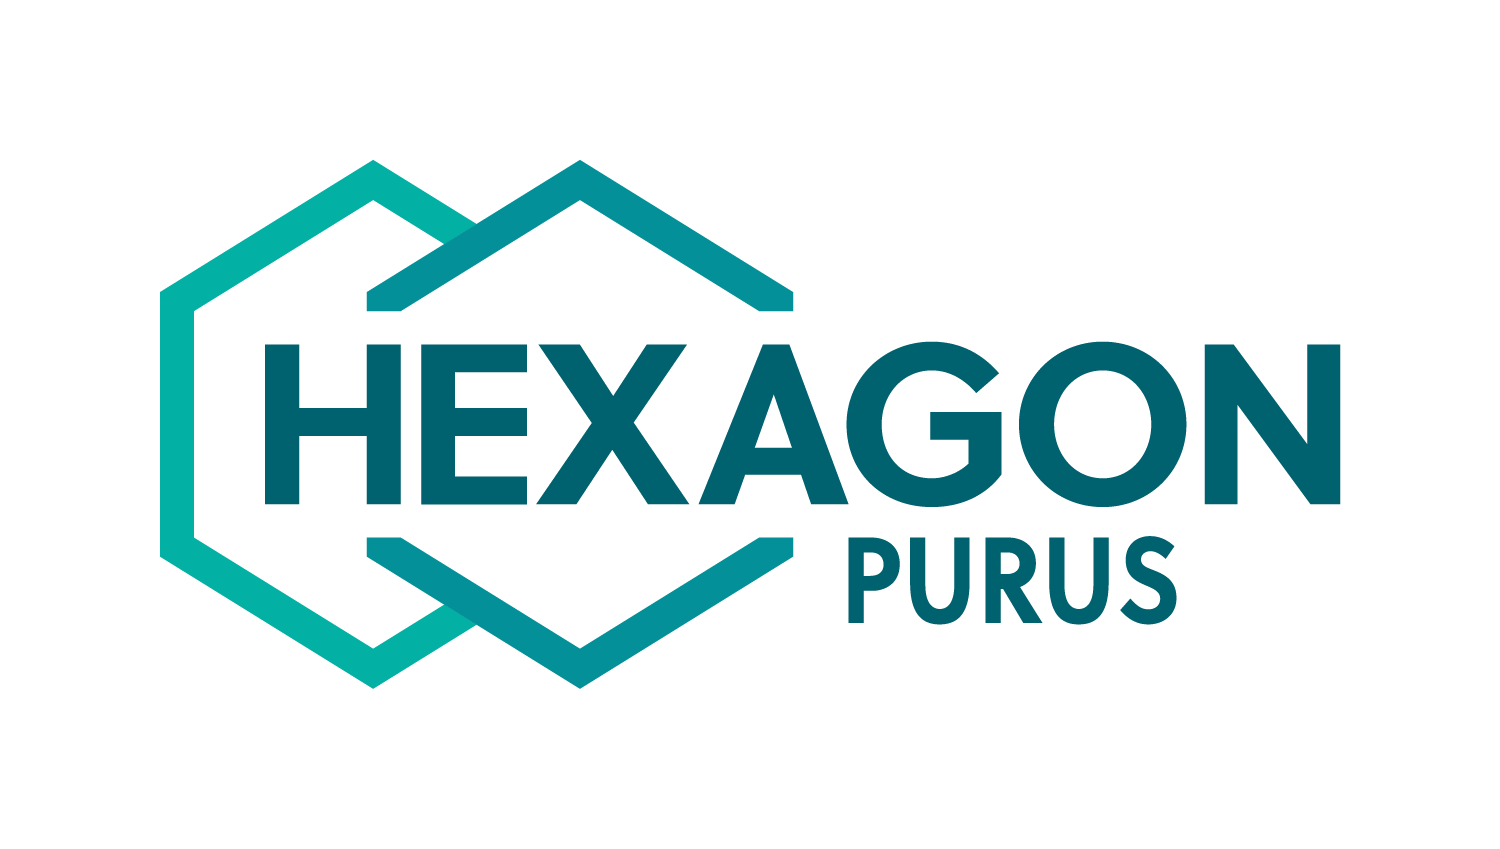 HEXAGON_PURUS_LOGO_POS_RGB.png